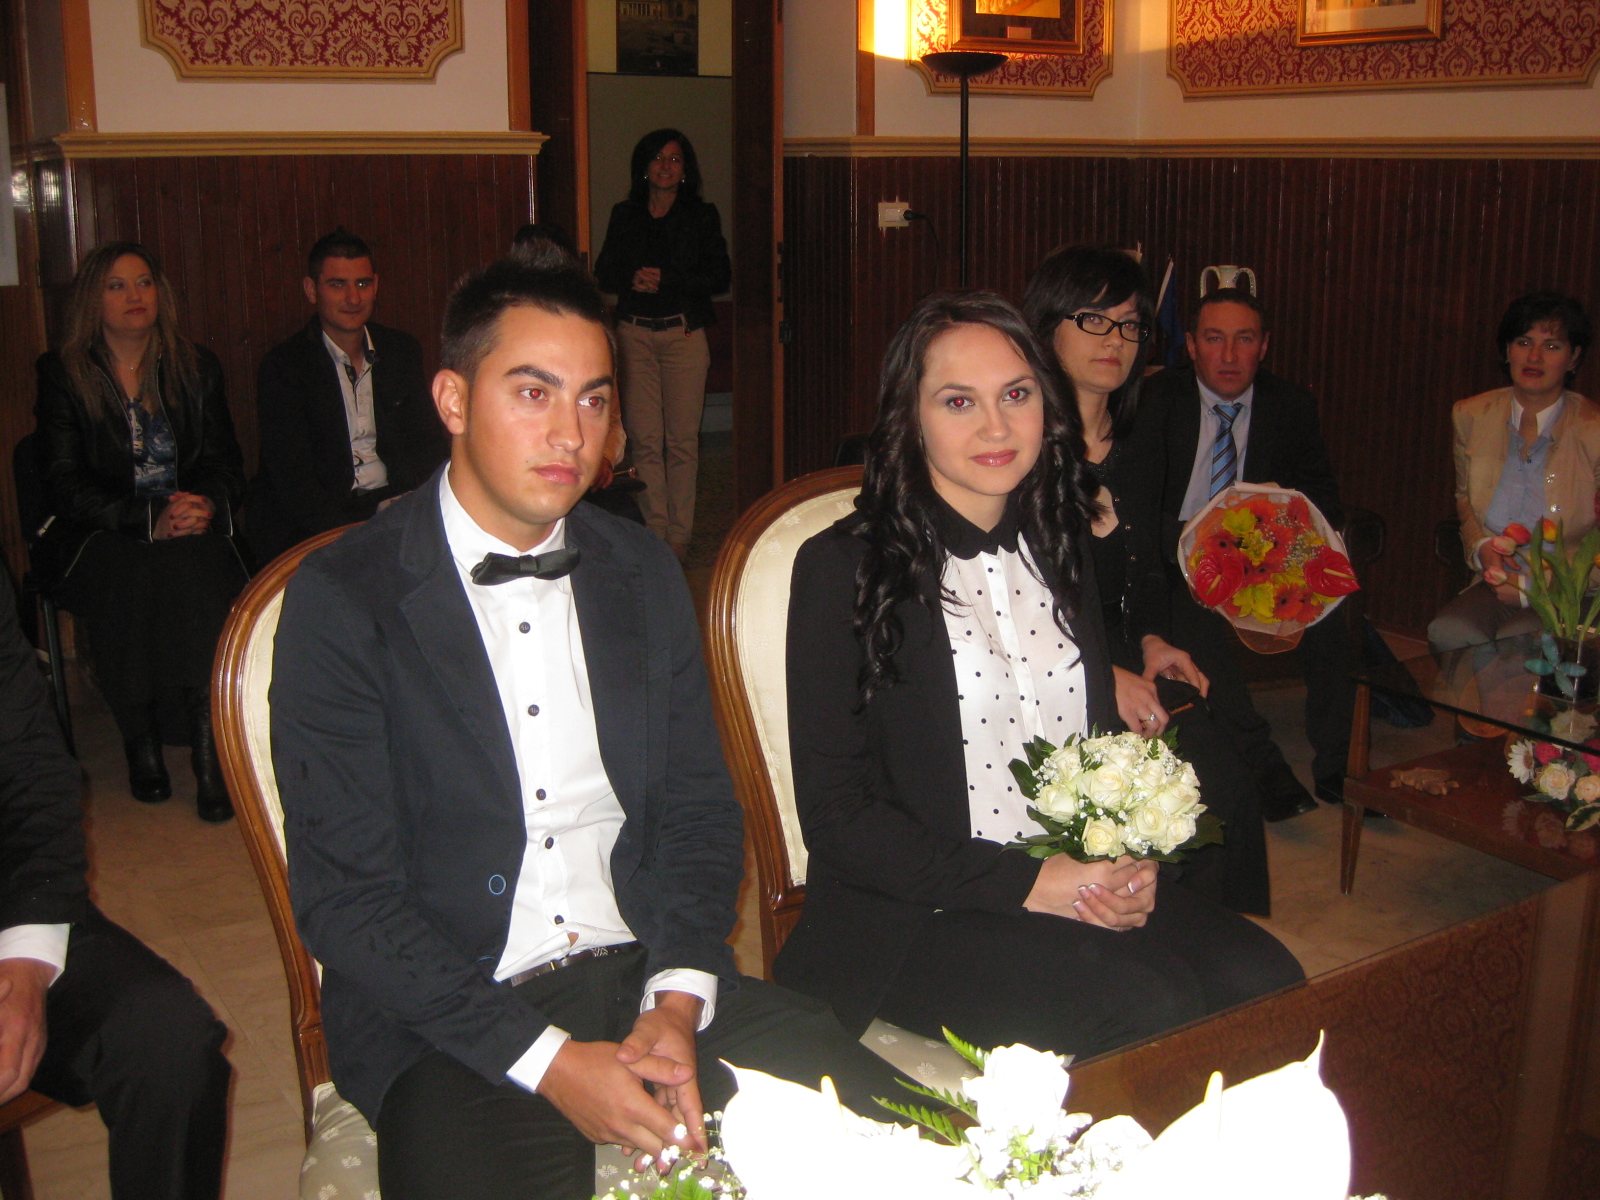  Celebrate in Comune le nozze di due giovani rumeni: hanno vent’anni e aspettano un bimbo